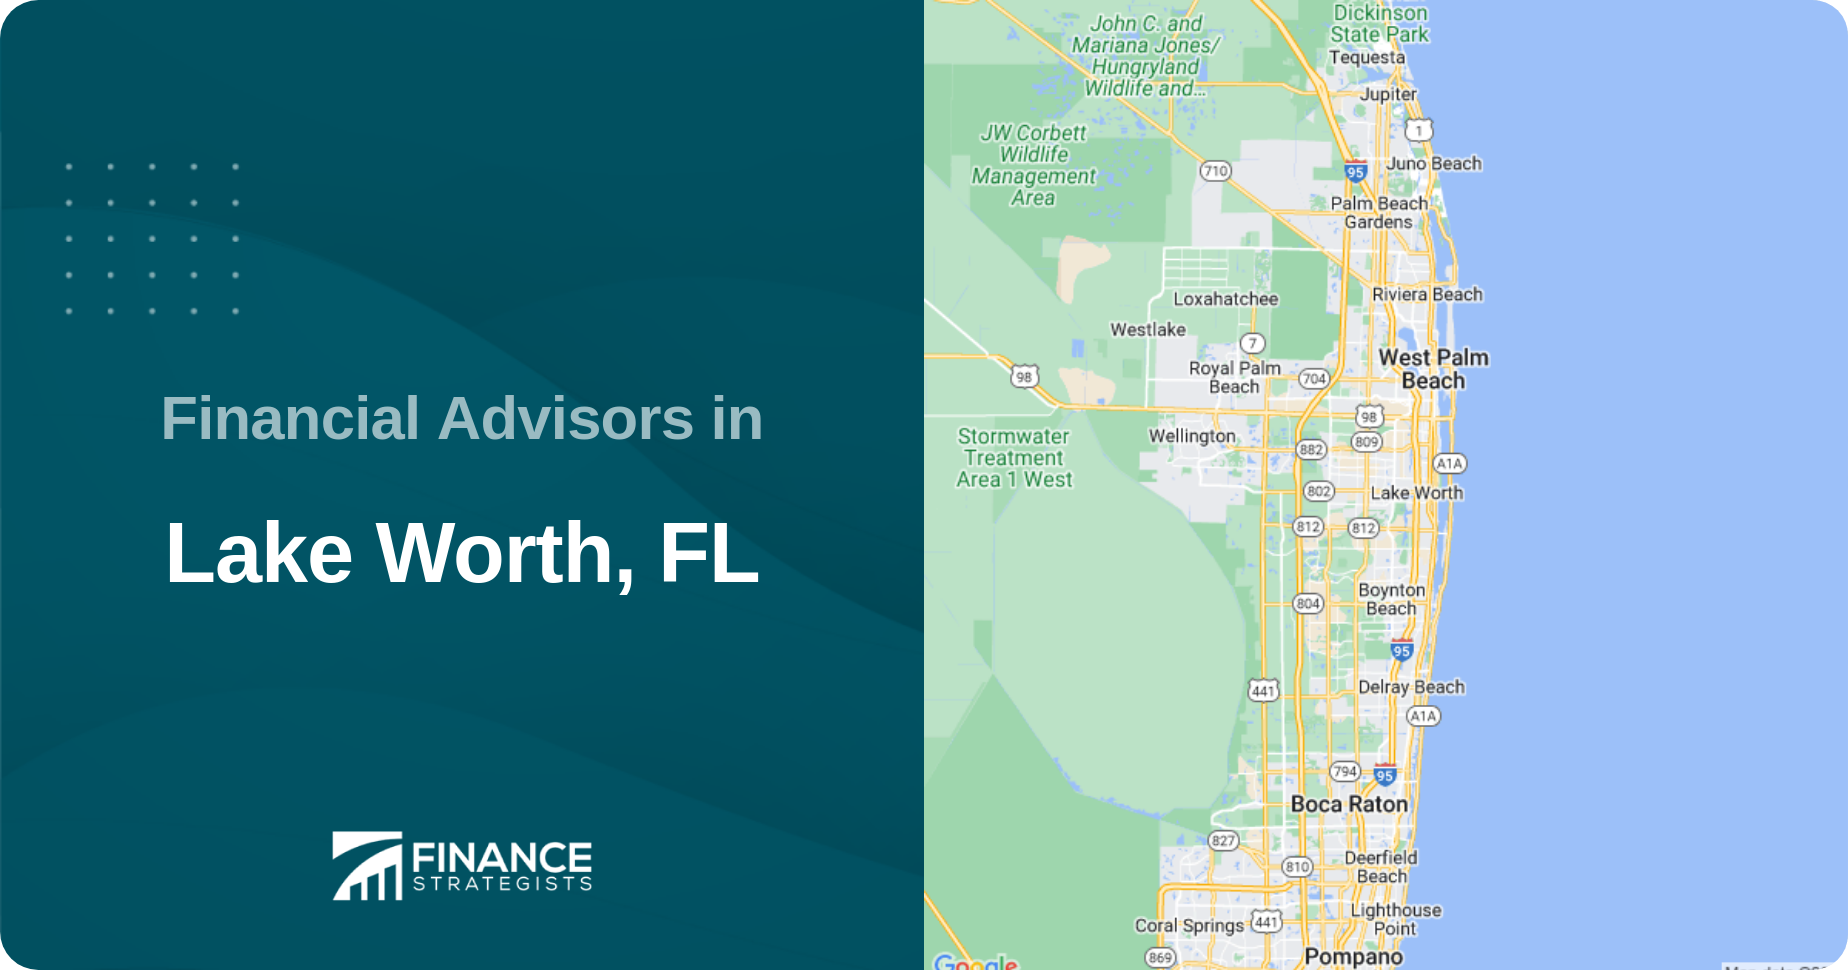 Financial Advisors in Lake Worth, FL